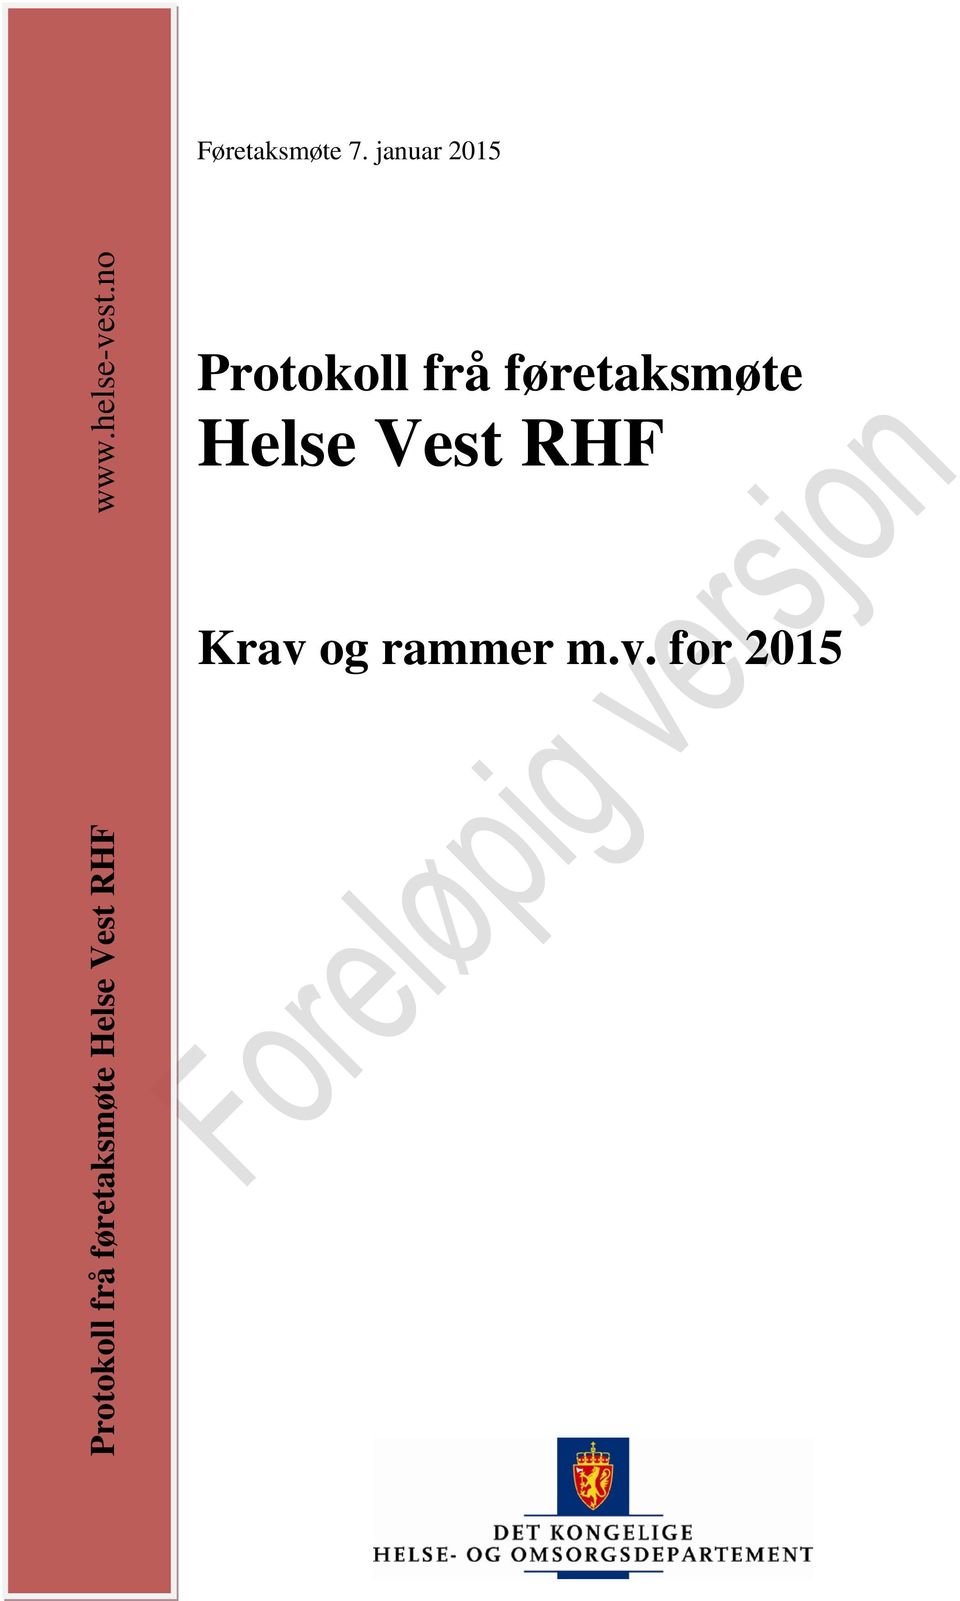 Helse Vest RHF www.helse-vest.